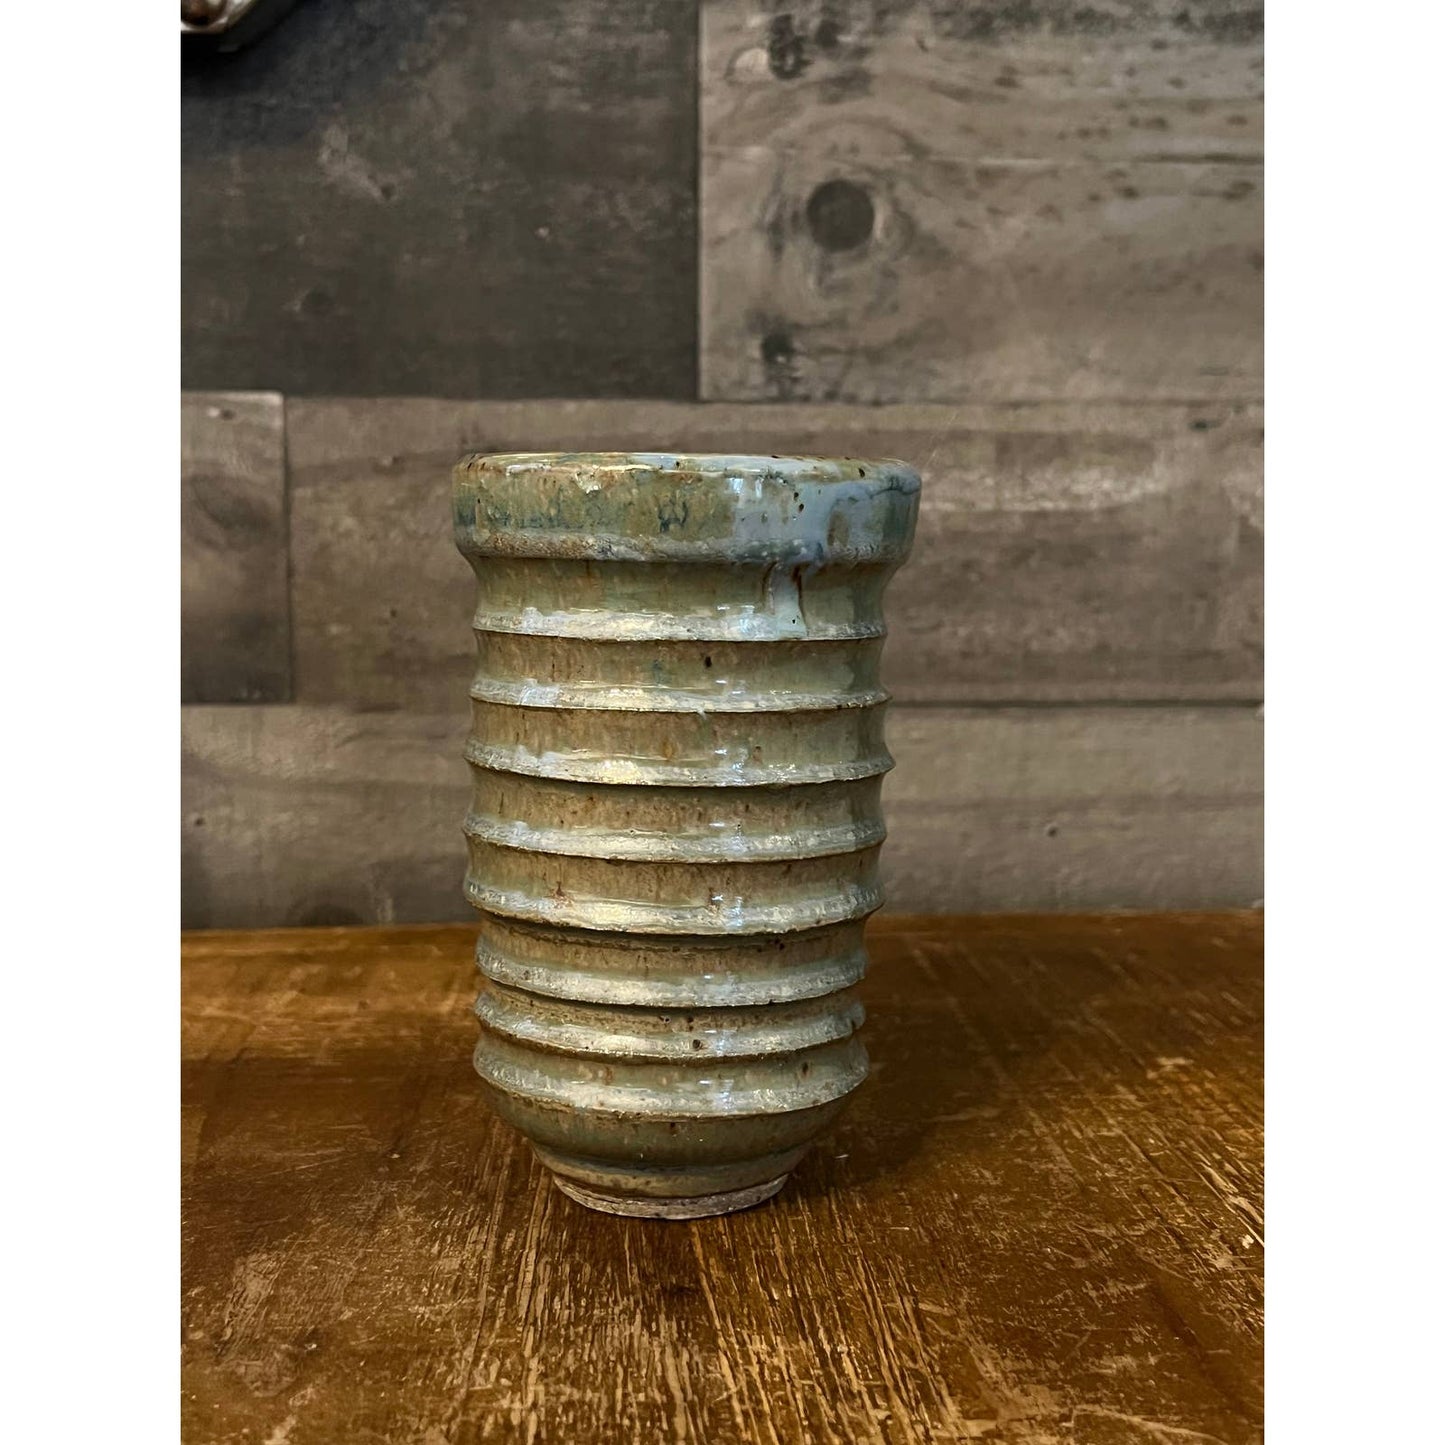 Light blue glaze pottery clay vase - ridged vessel